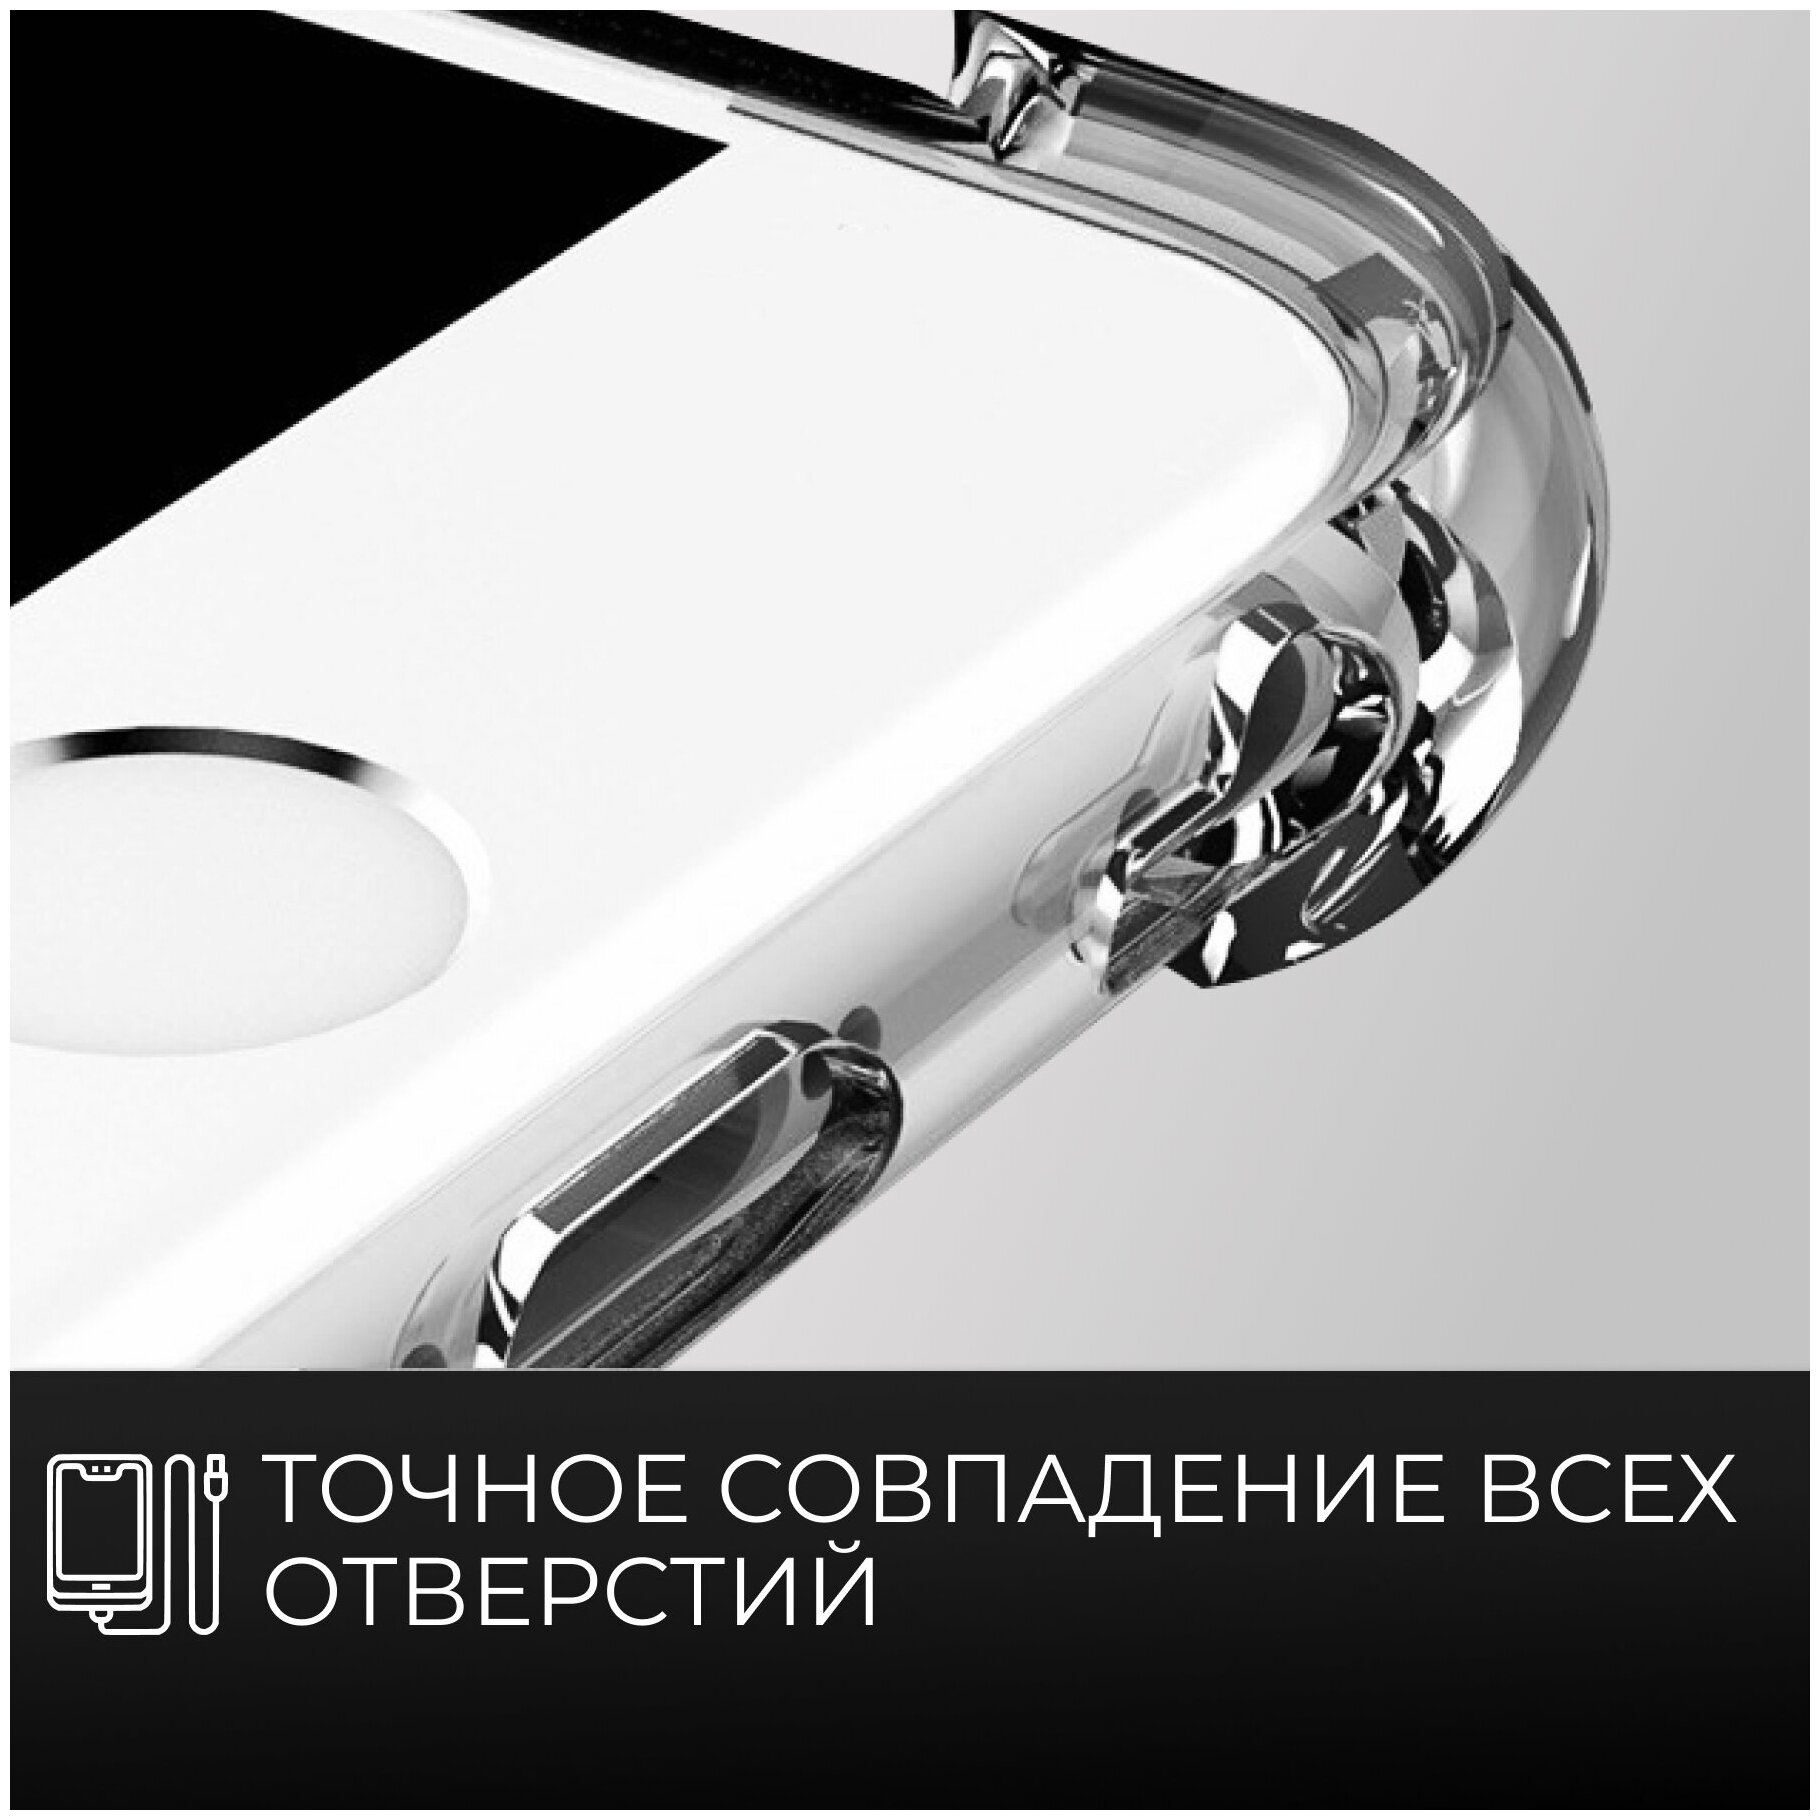 Силиконовый прозрачный чехол Armor для Apple iPhone 11 Pro с усиленными углами / Чехол Армор дляартфона Эпл Айфон 11 Про